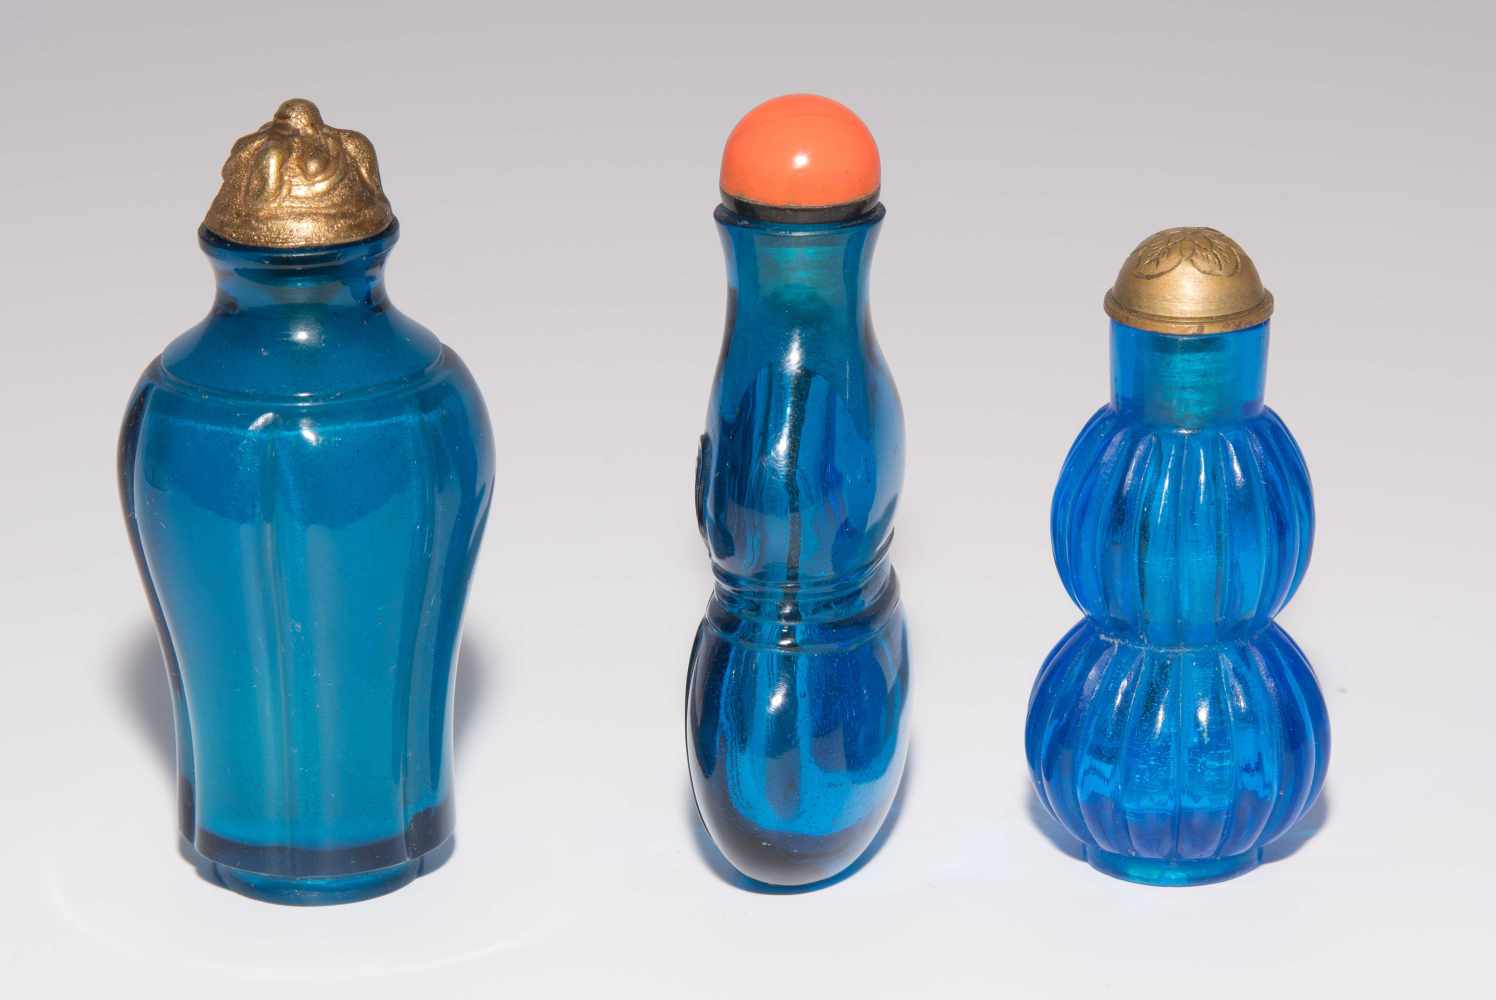 6 Glas Snuff BottlesChina. Transparentes Glas in verschiedenen Blautönen. Ein Snuff Bottle mit - Image 8 of 15